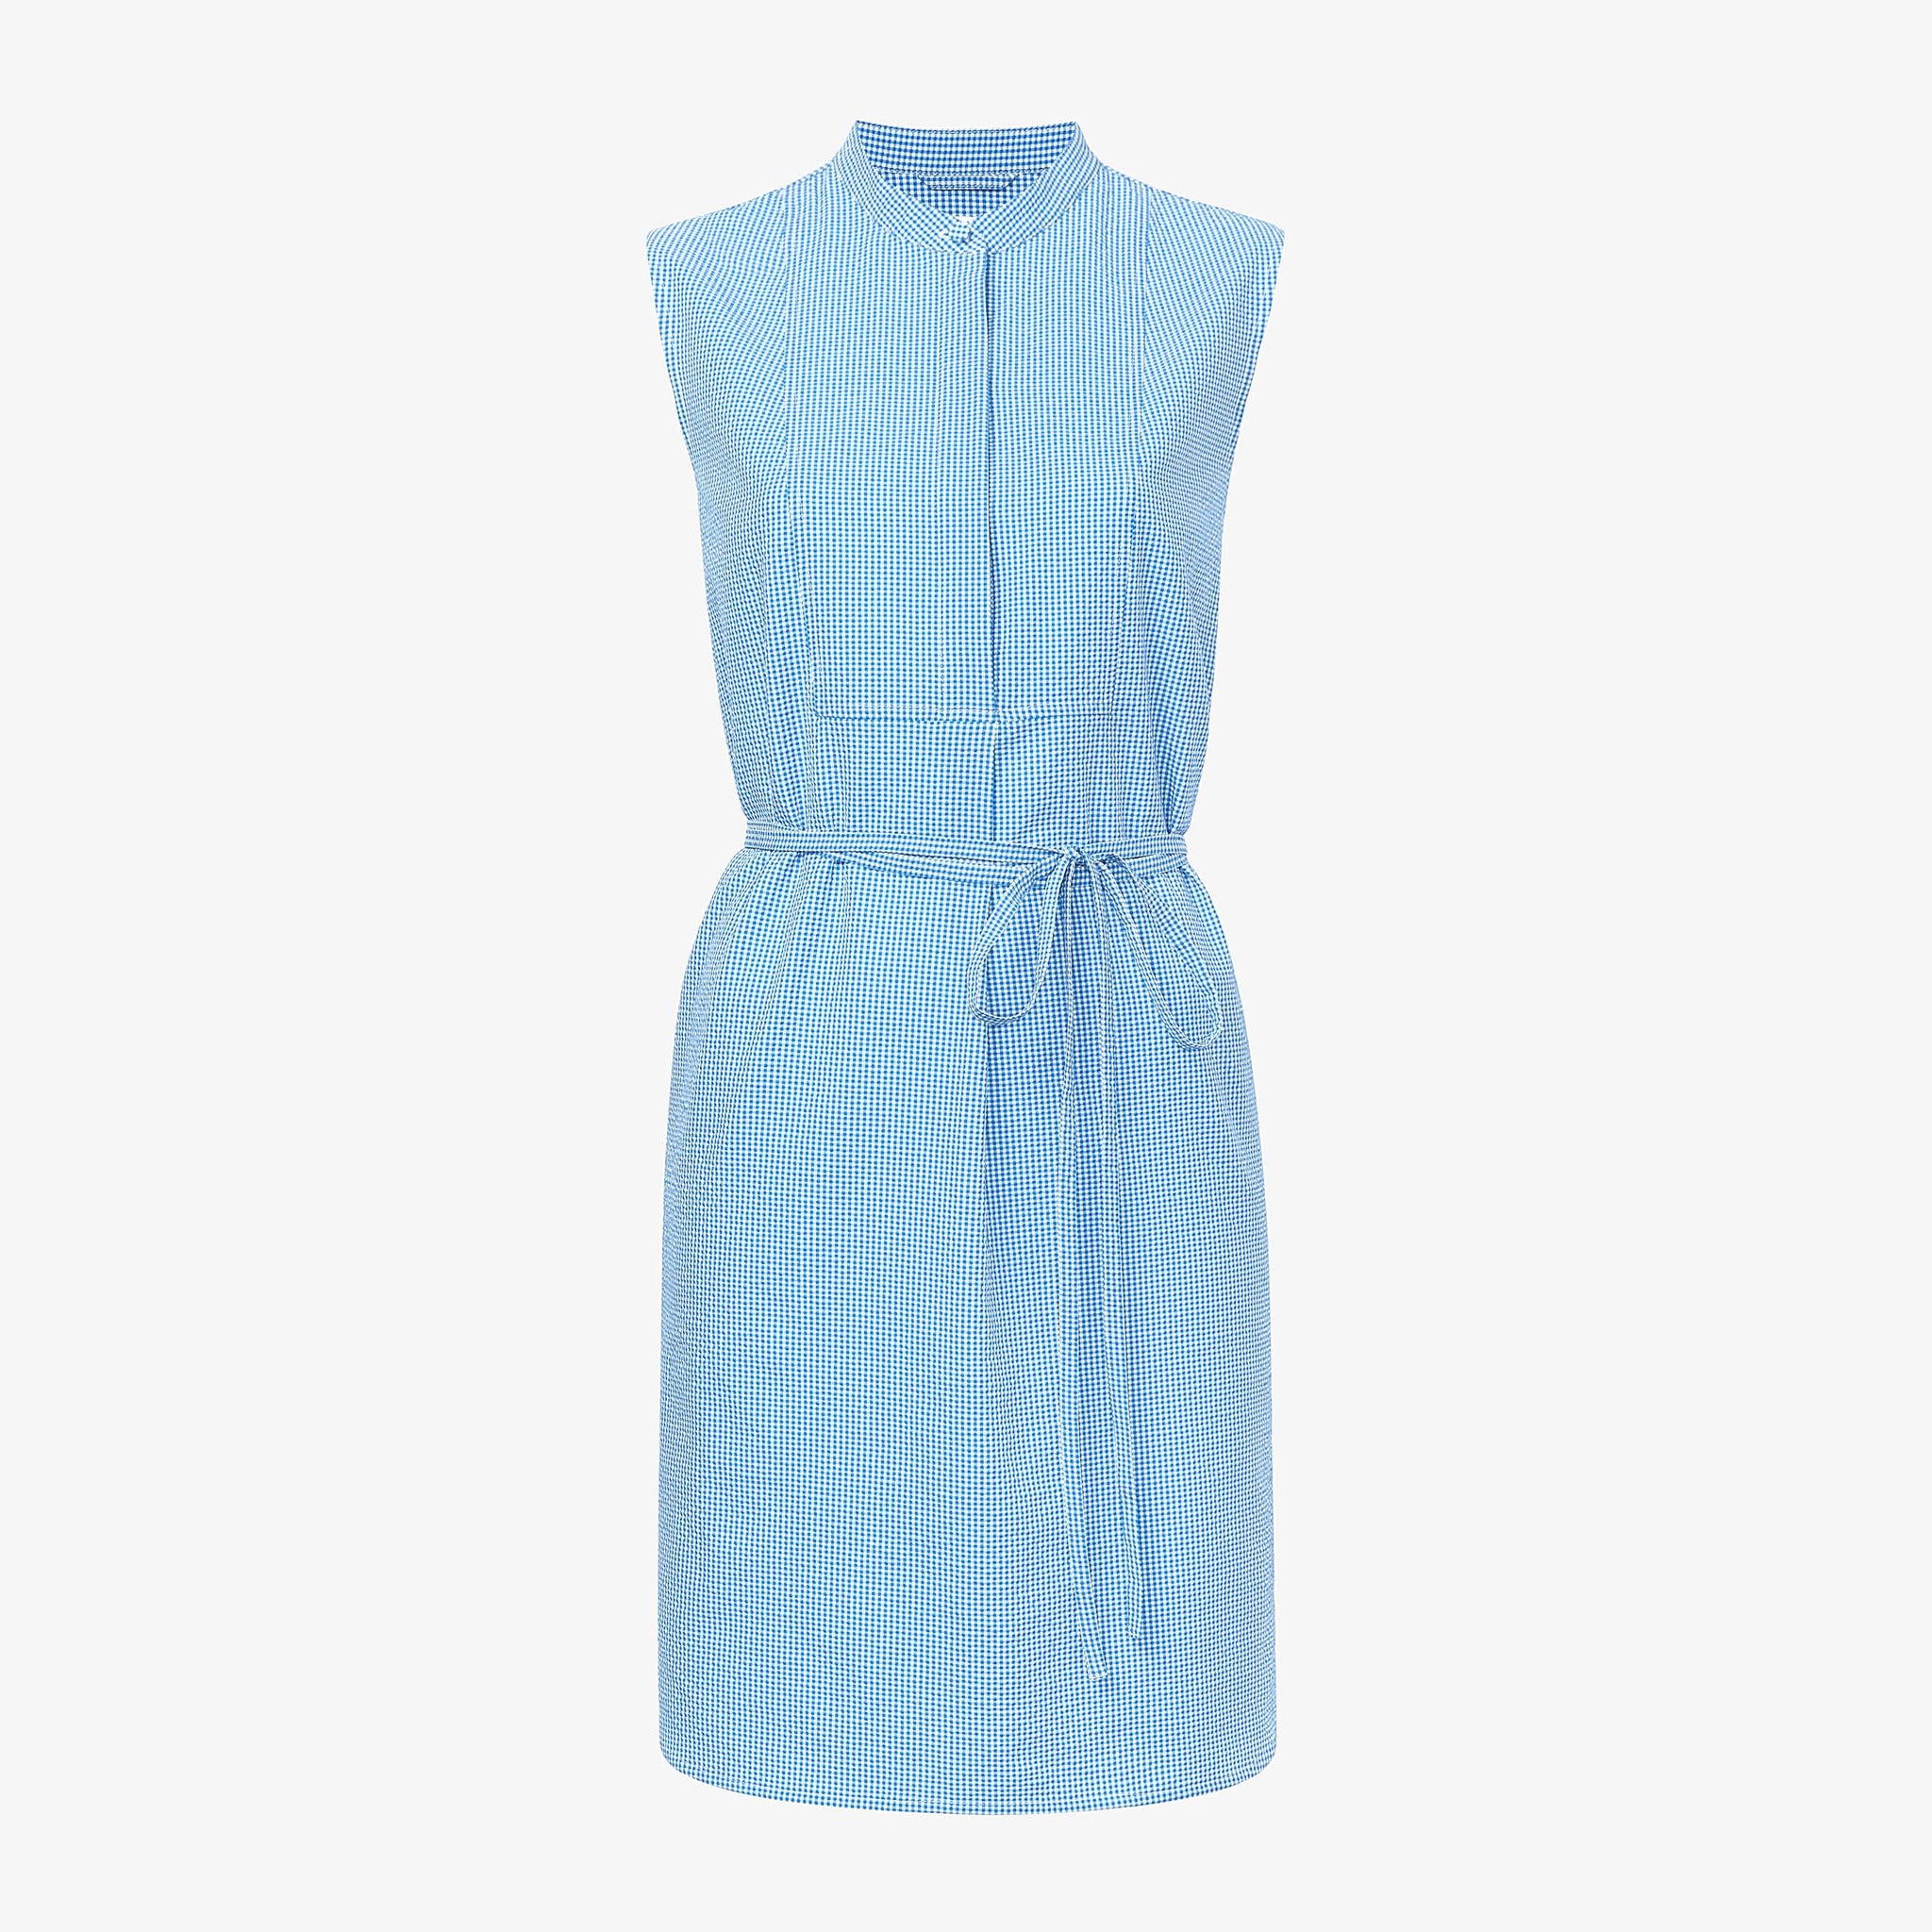 packshot image of the Gigi Dress—Gingham Seersucker in Capri Blue / White